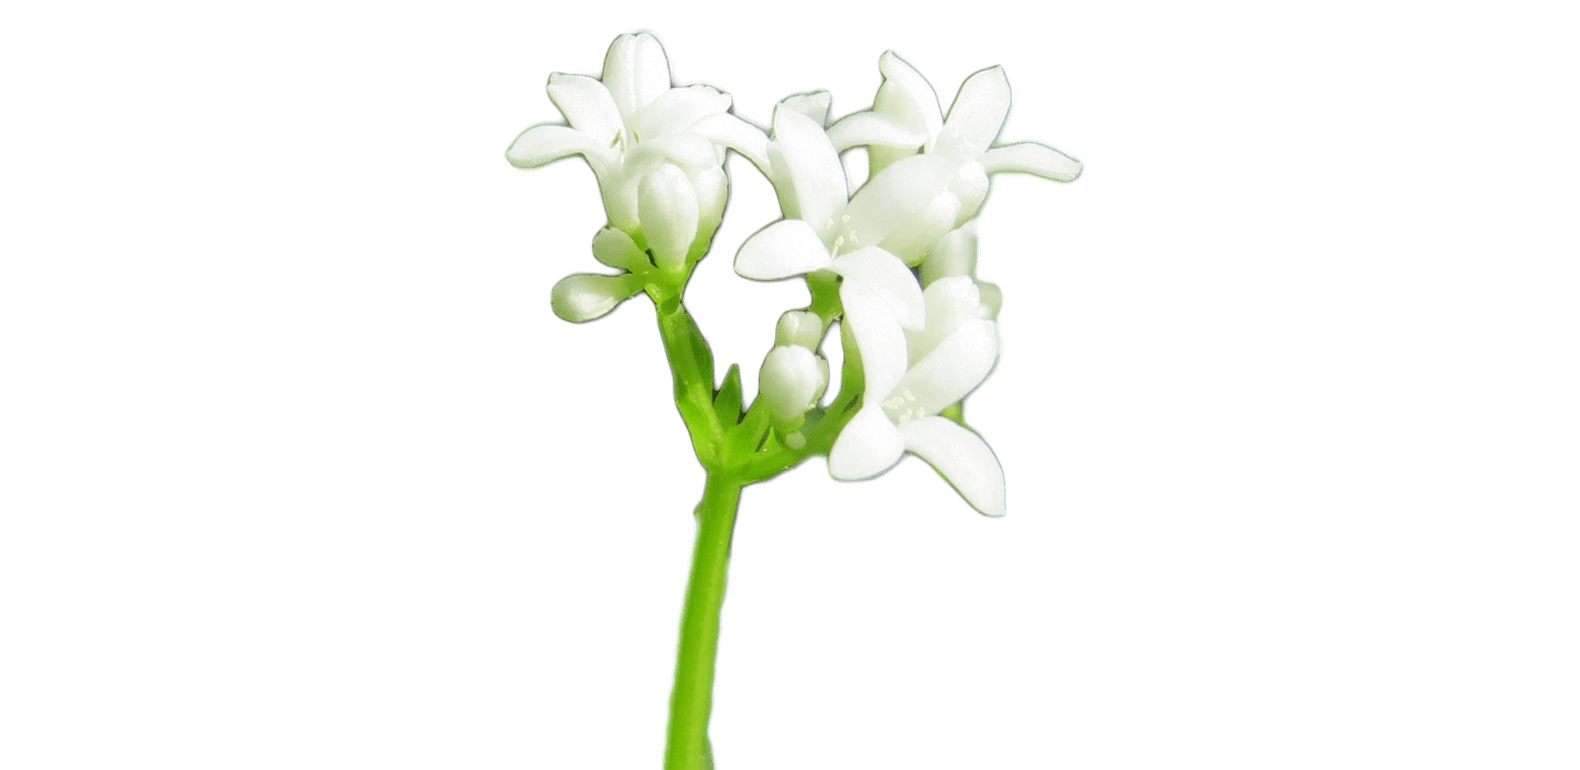 Aspérule – Gallium odoratum – Gaillet odorant